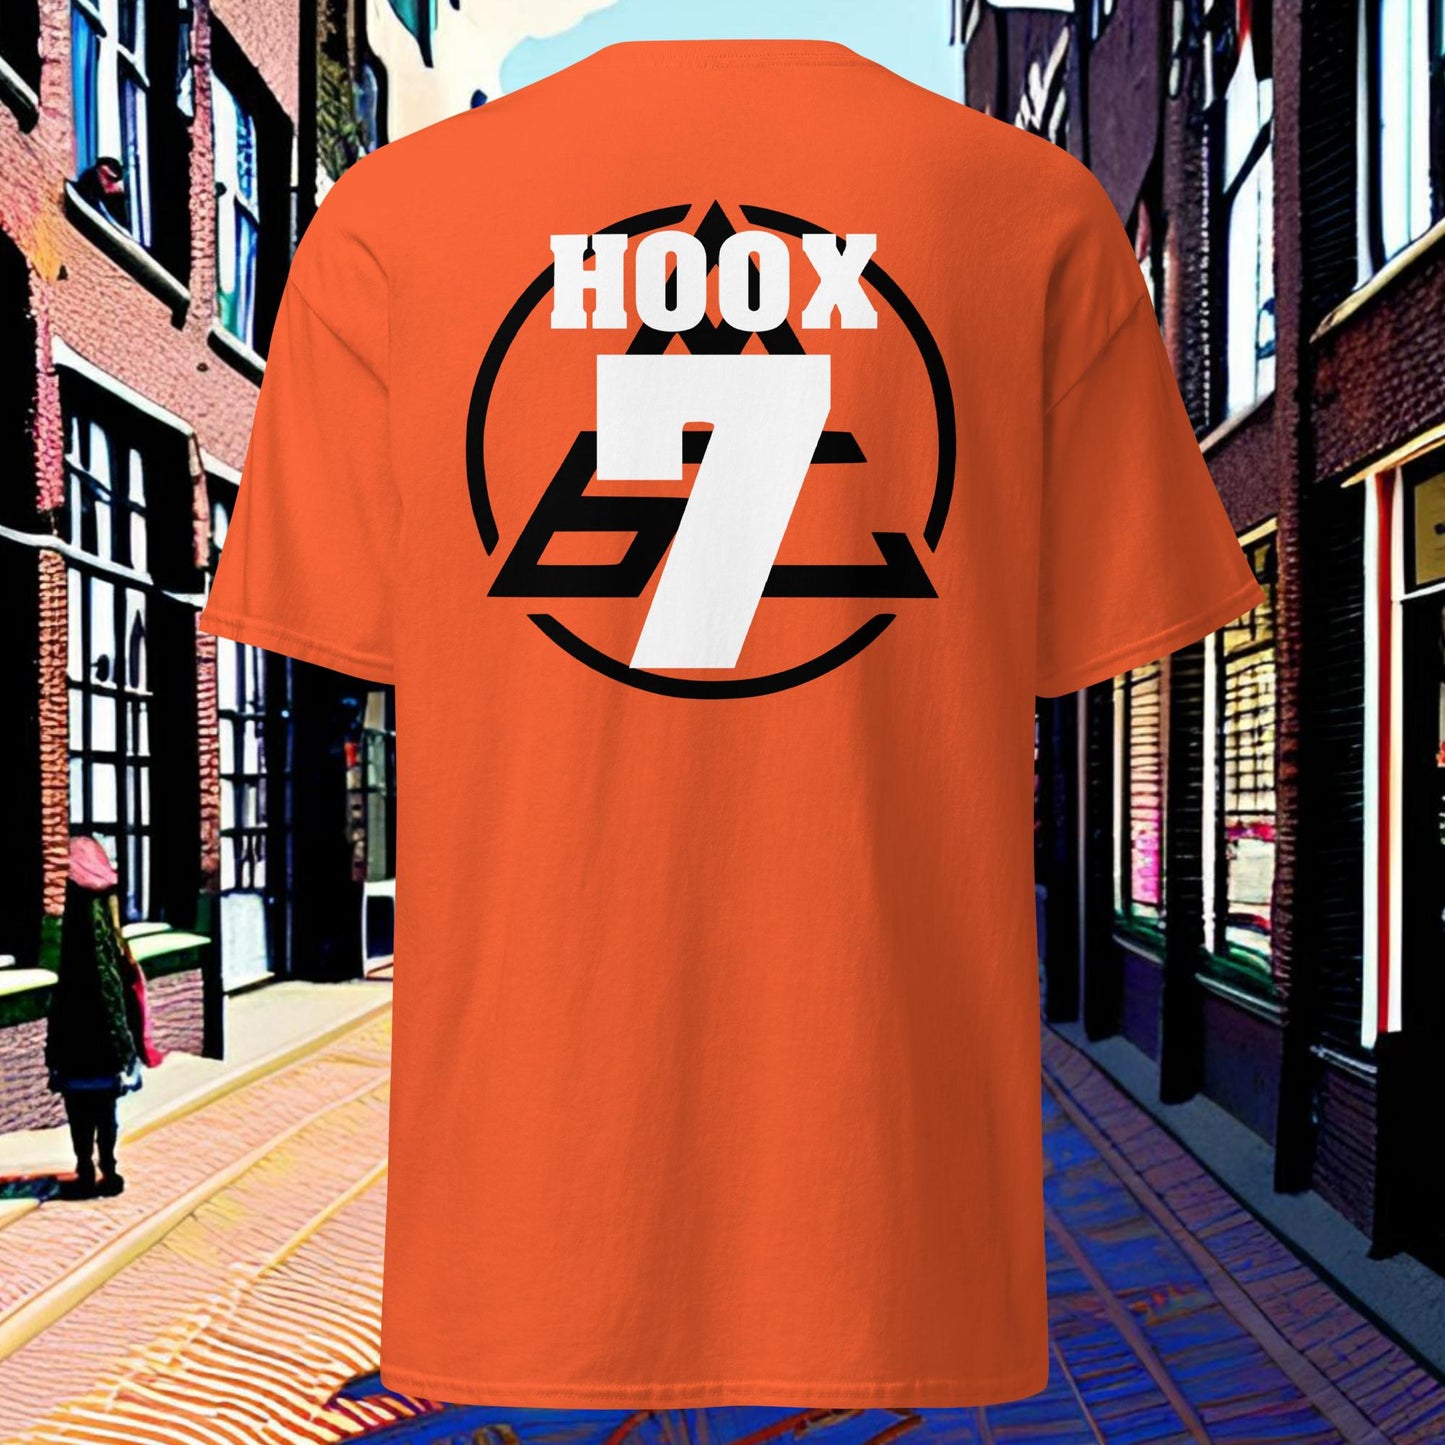 Negen Zeven - Hoox #7